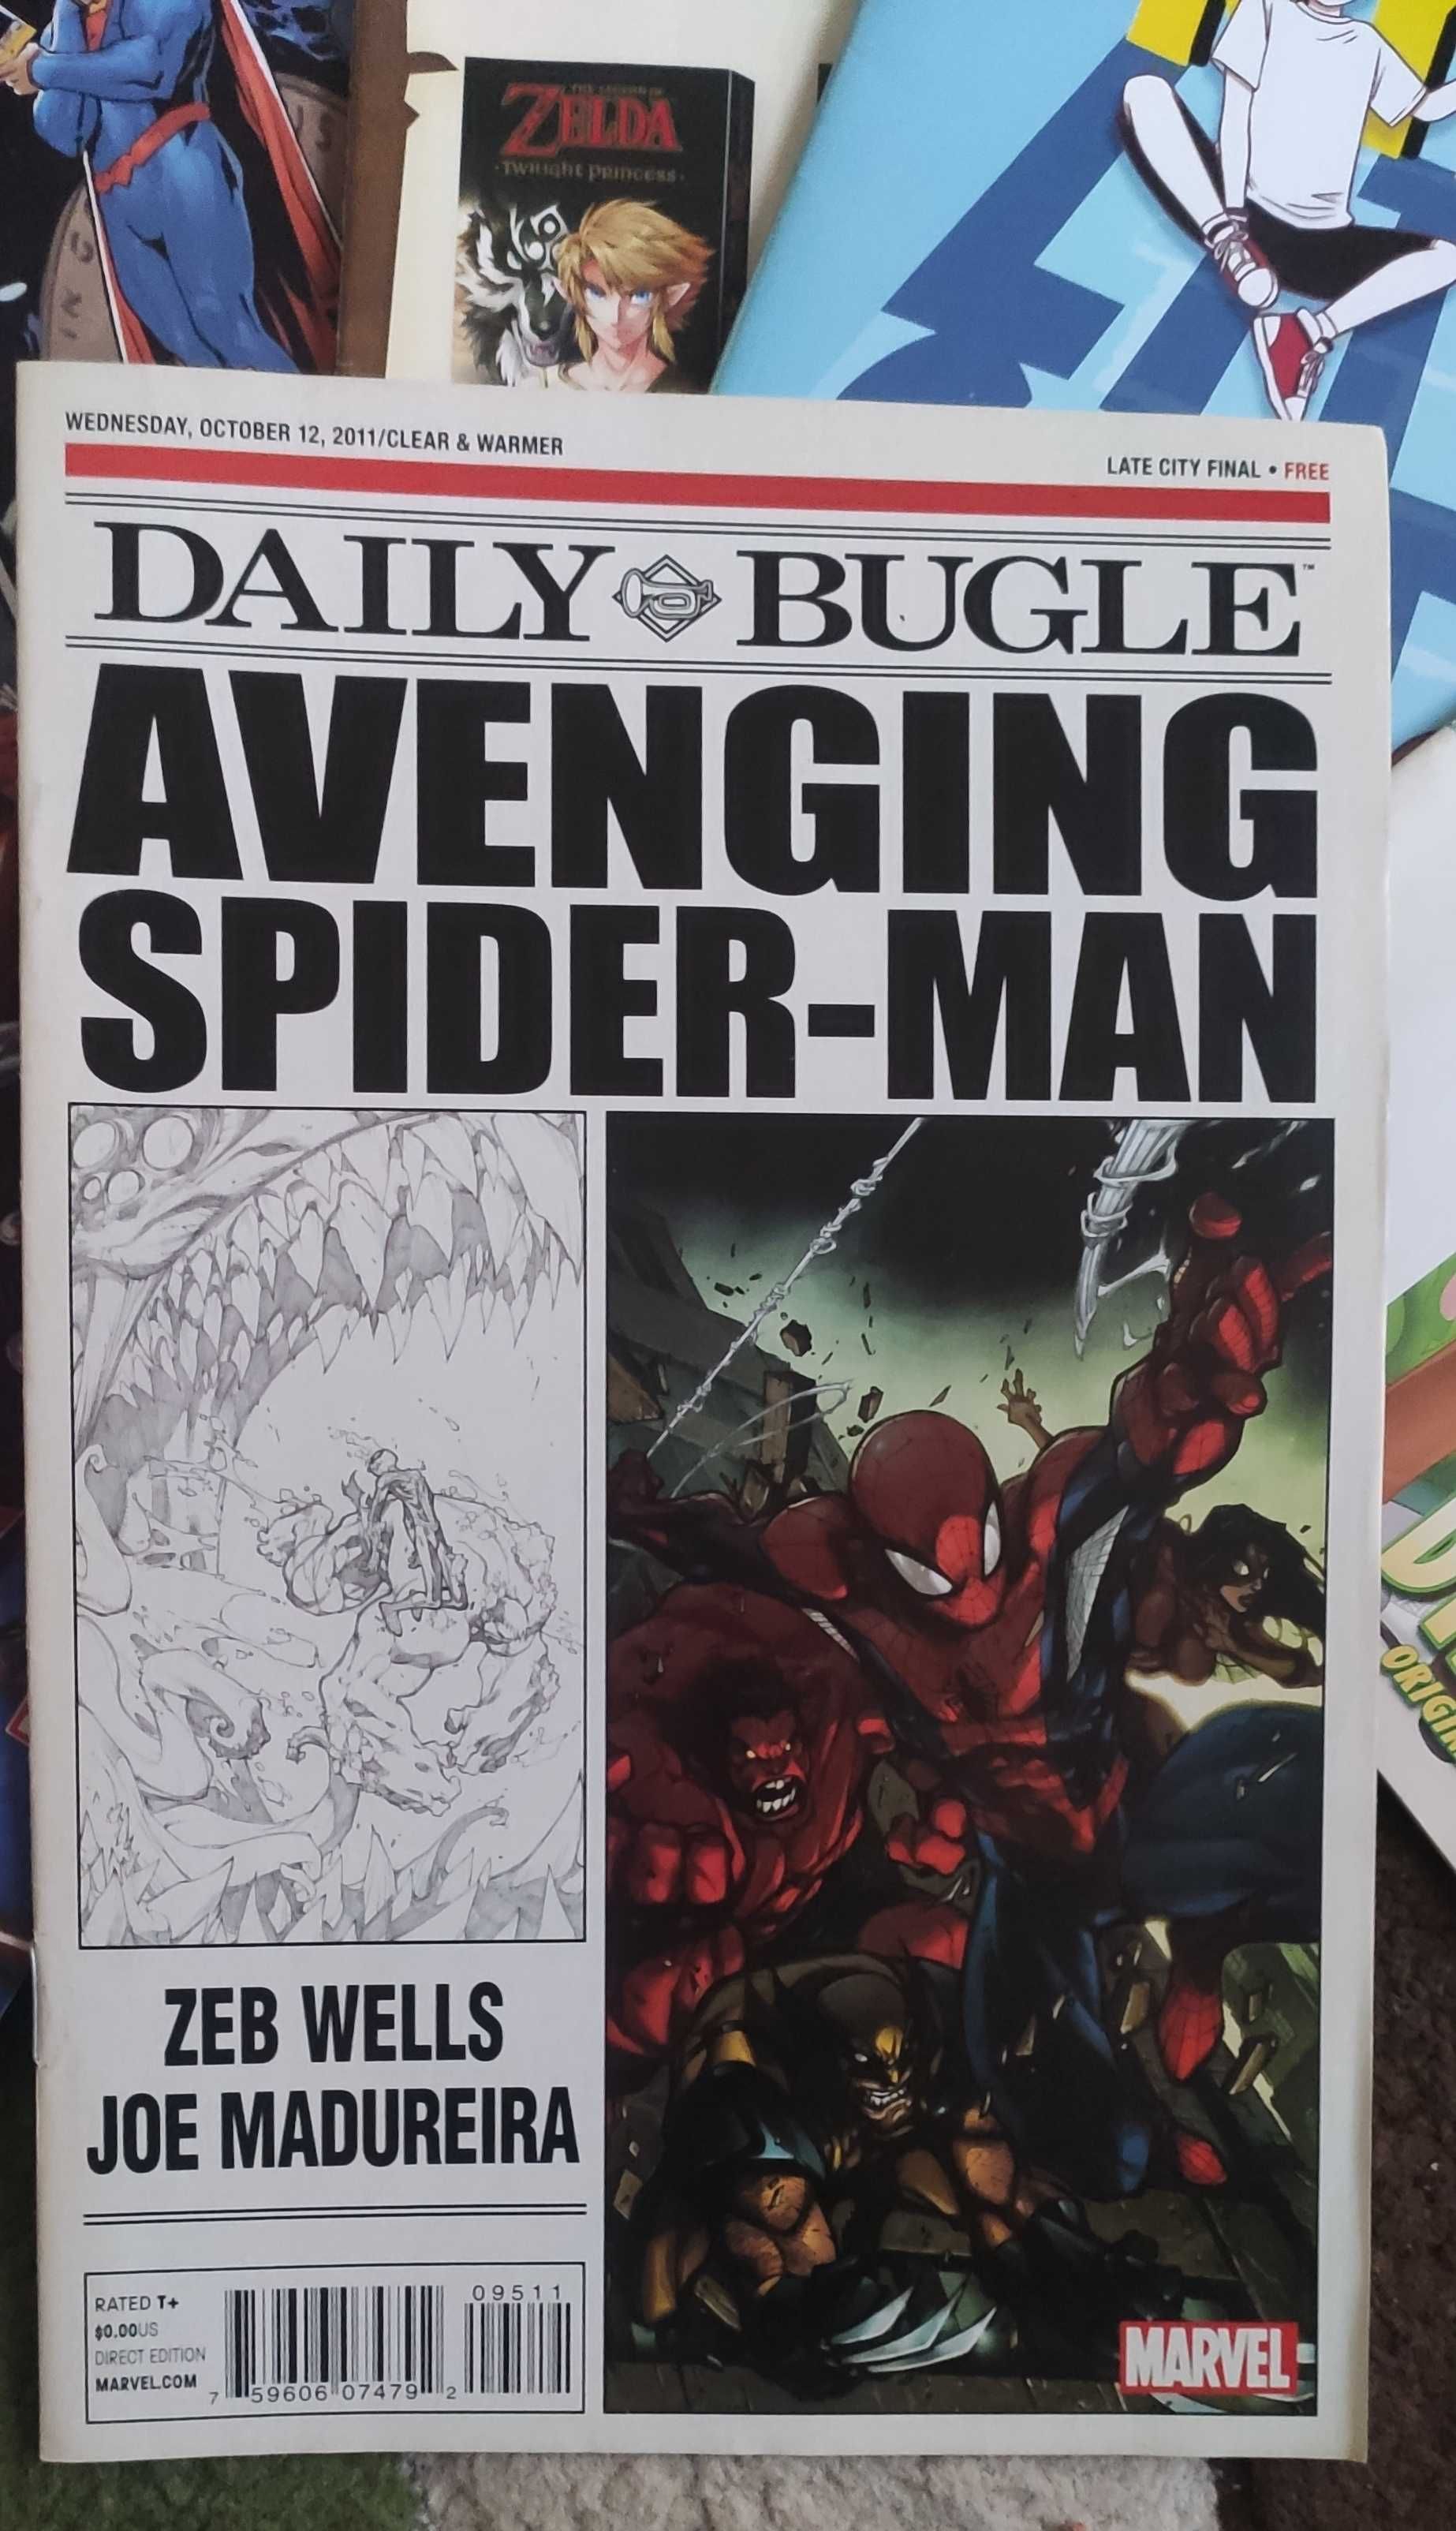 Komiks SpiderMan,SuperHero,Zelda,Marvel